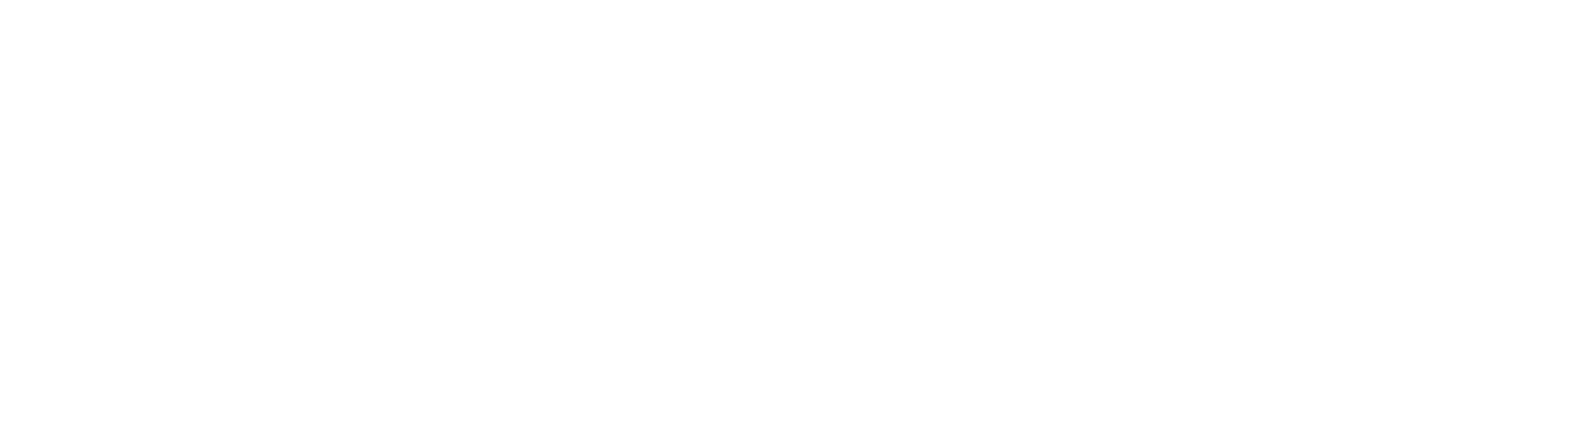 Bendigo and Adelaide Bank logo grand pour les fonds sombres (PNG transparent)